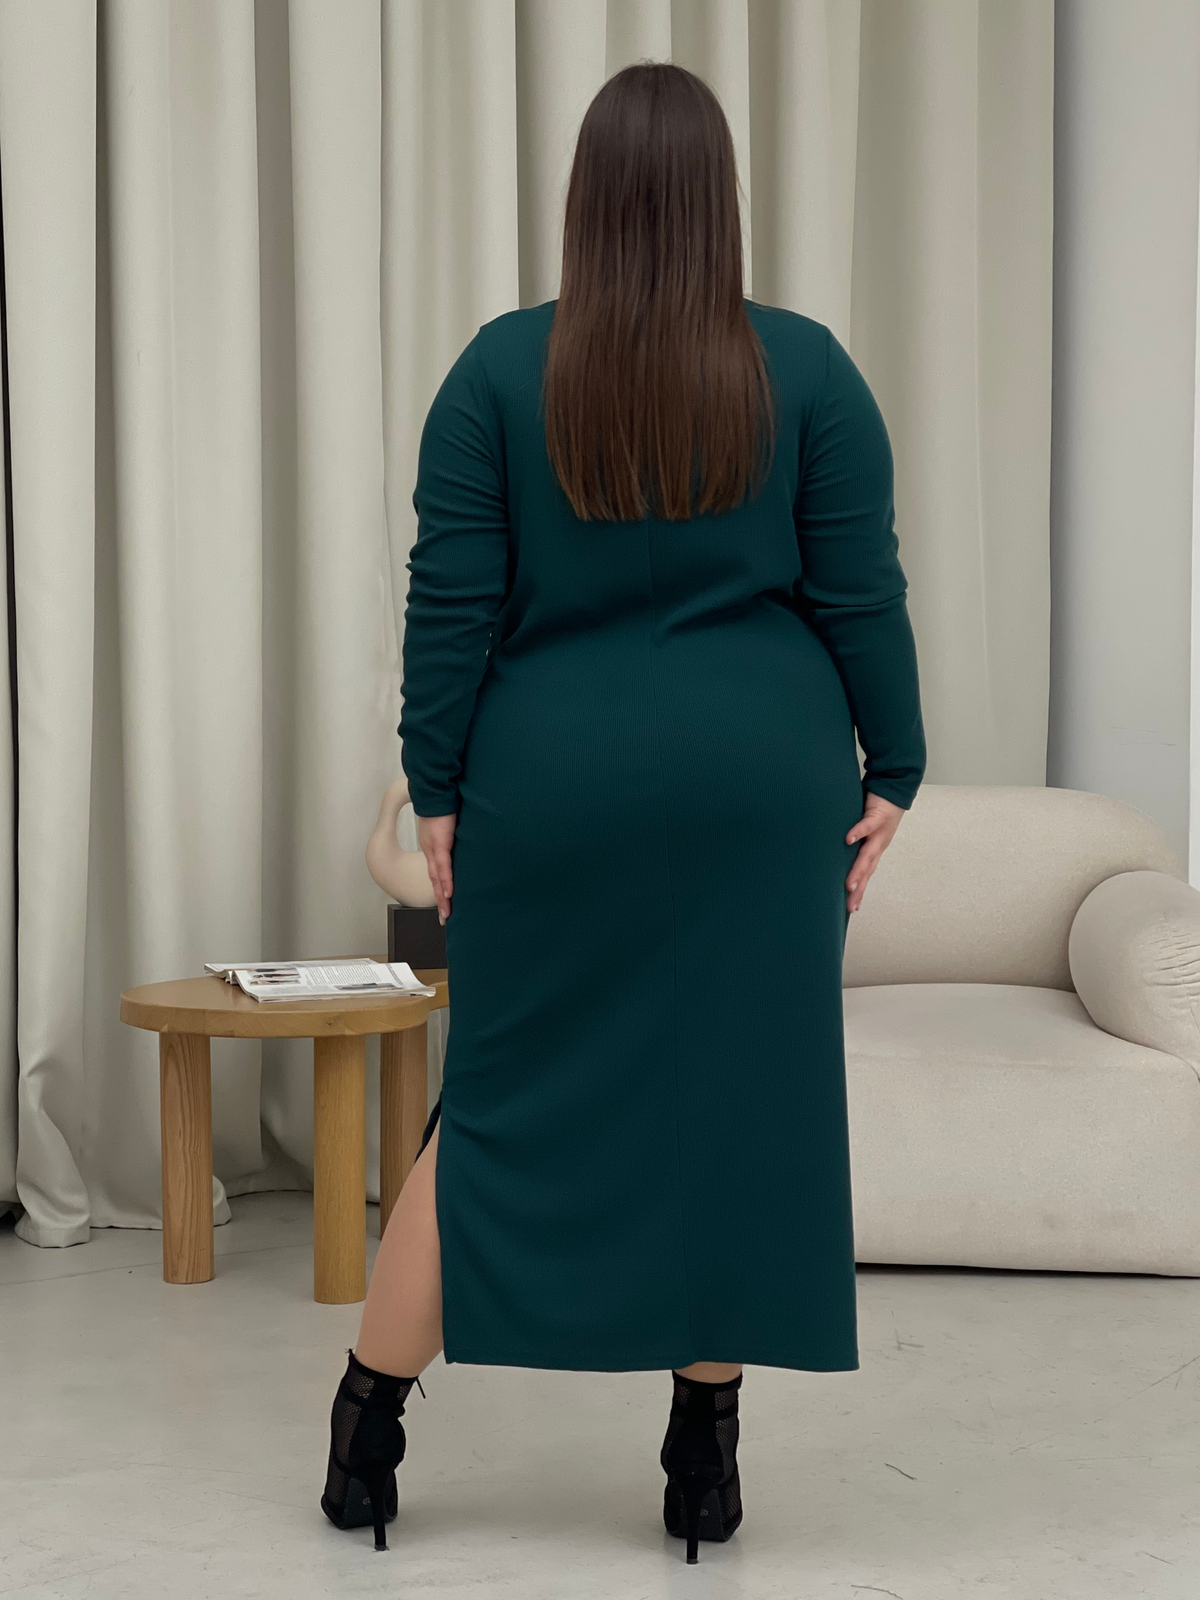 Купить Длинное платье зеленое в рубчик с длинным рукавом Merlini Кондо 700001163, размер 42-44 (S-M) в интернет-магазине